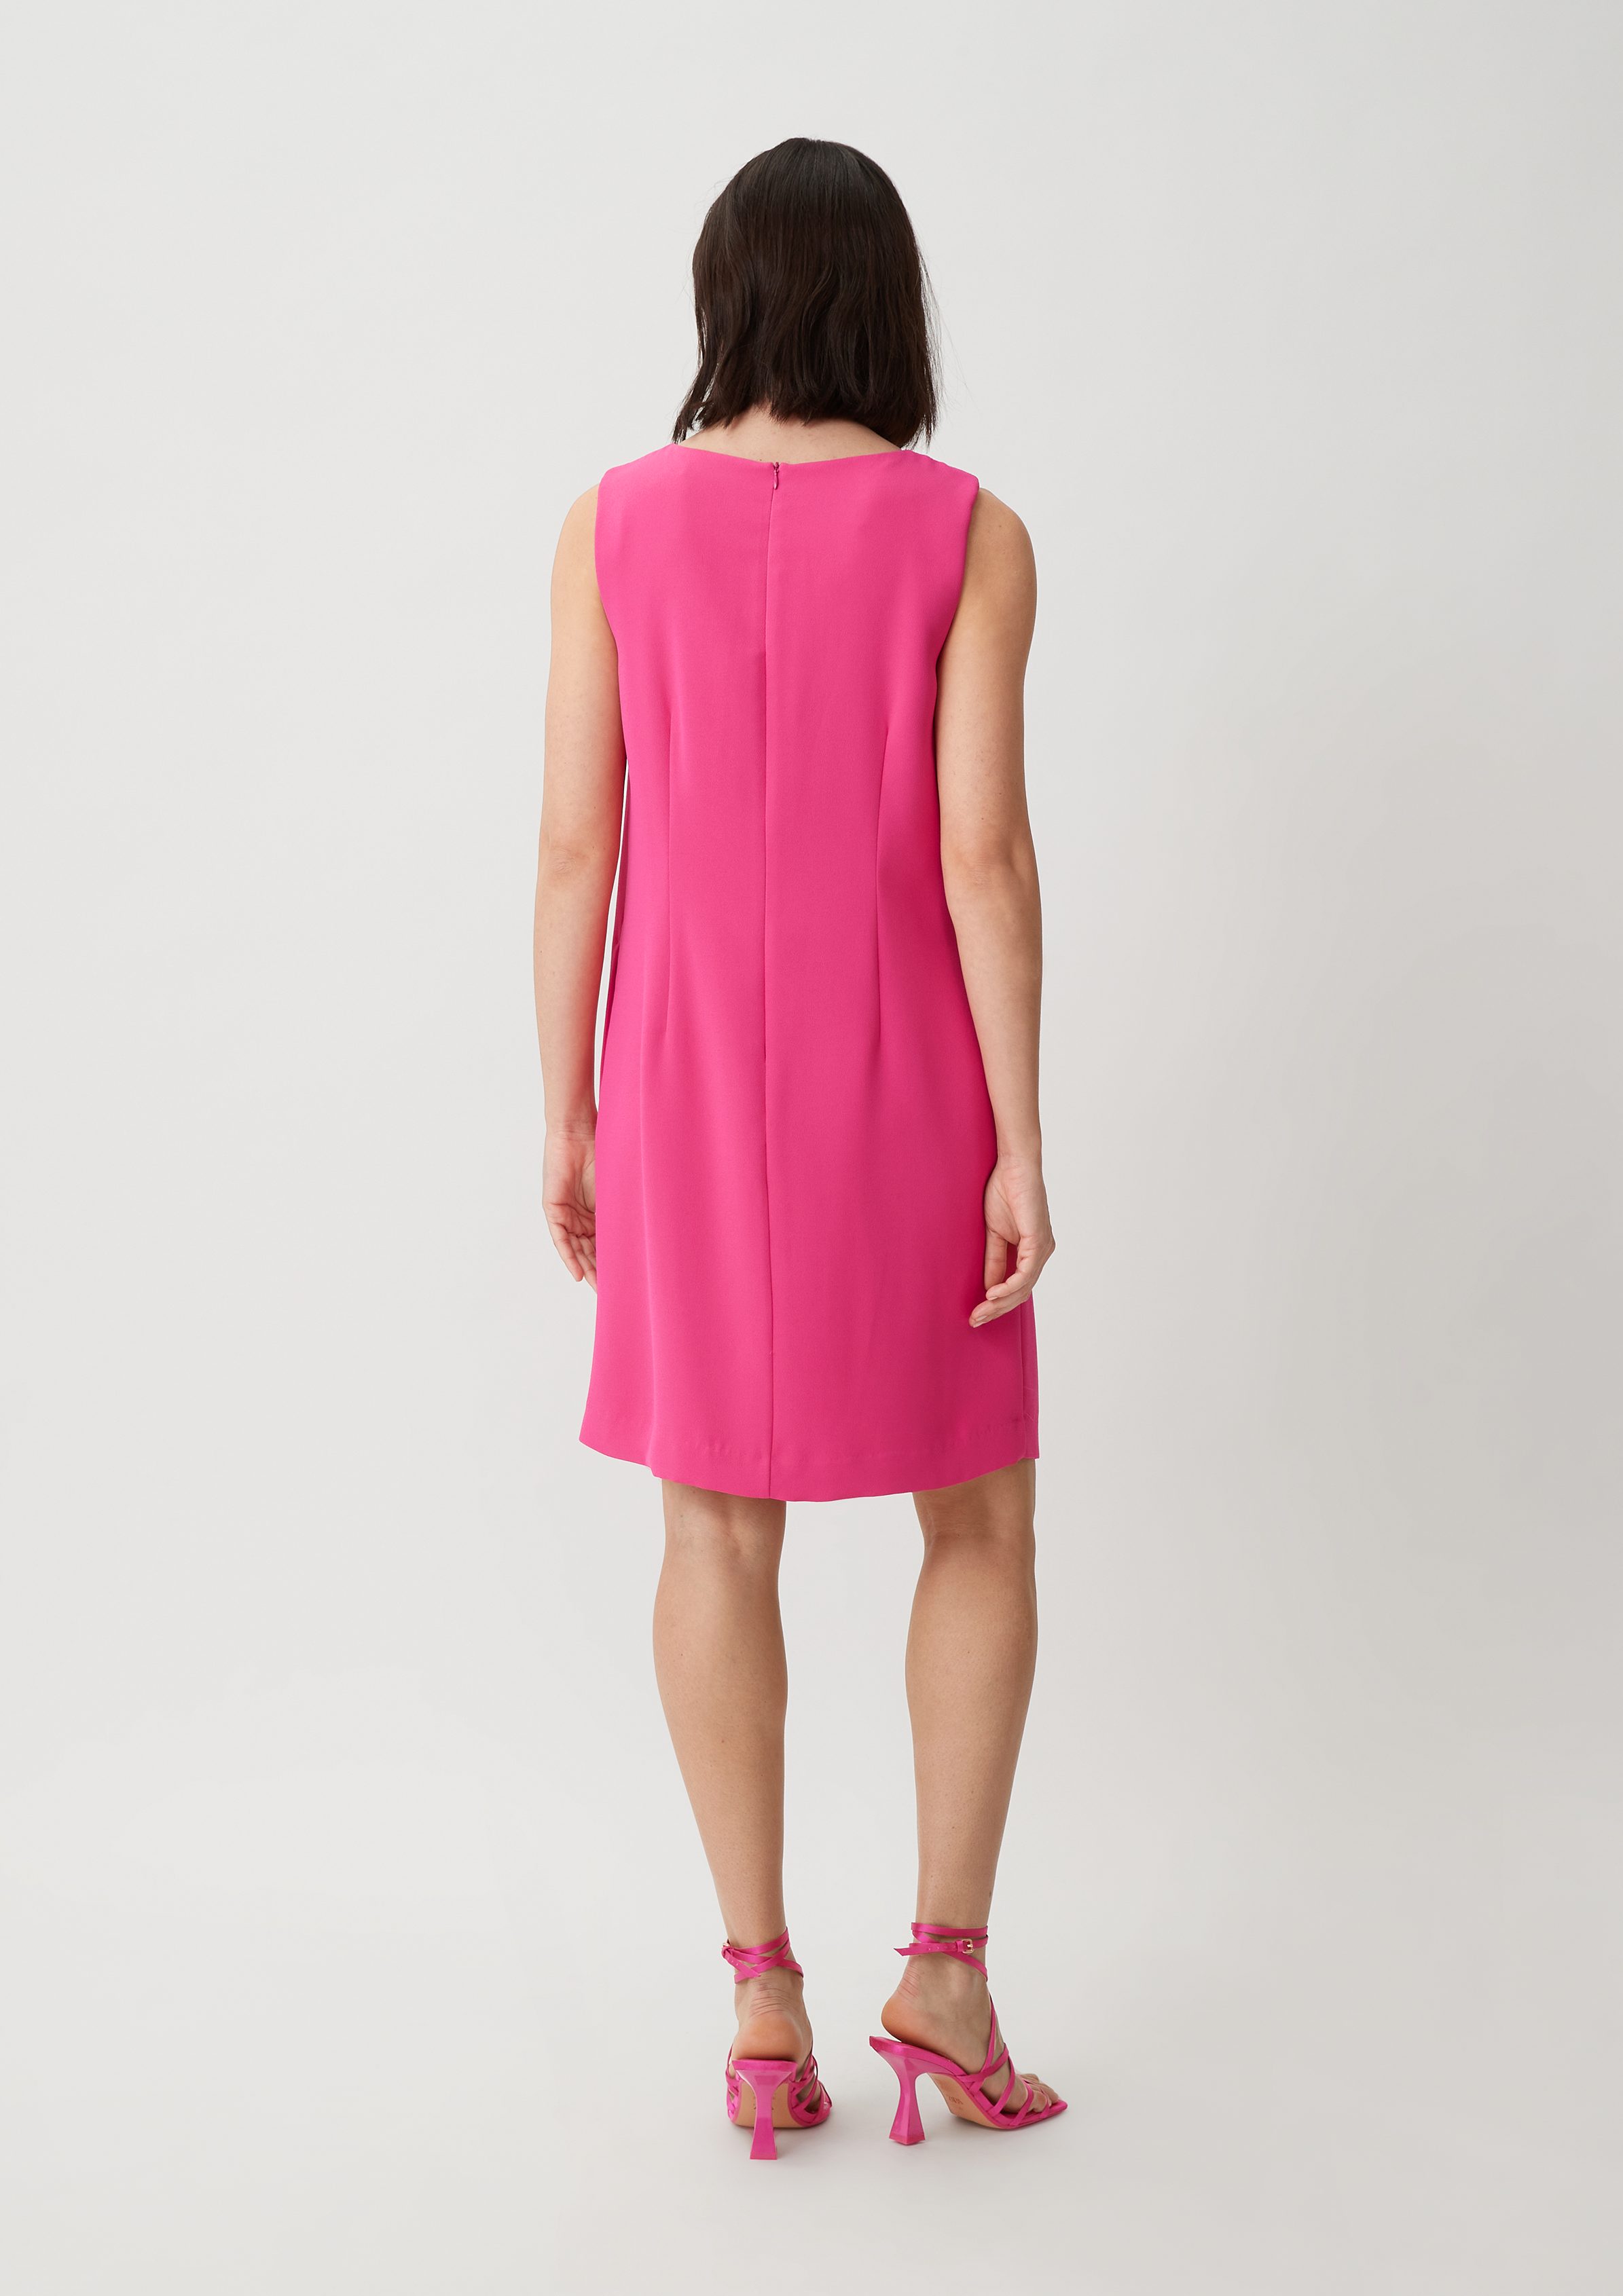 Crêpe aus Kleid Raffung Kurzes pink Teilungsnähte, Minikleid Comma